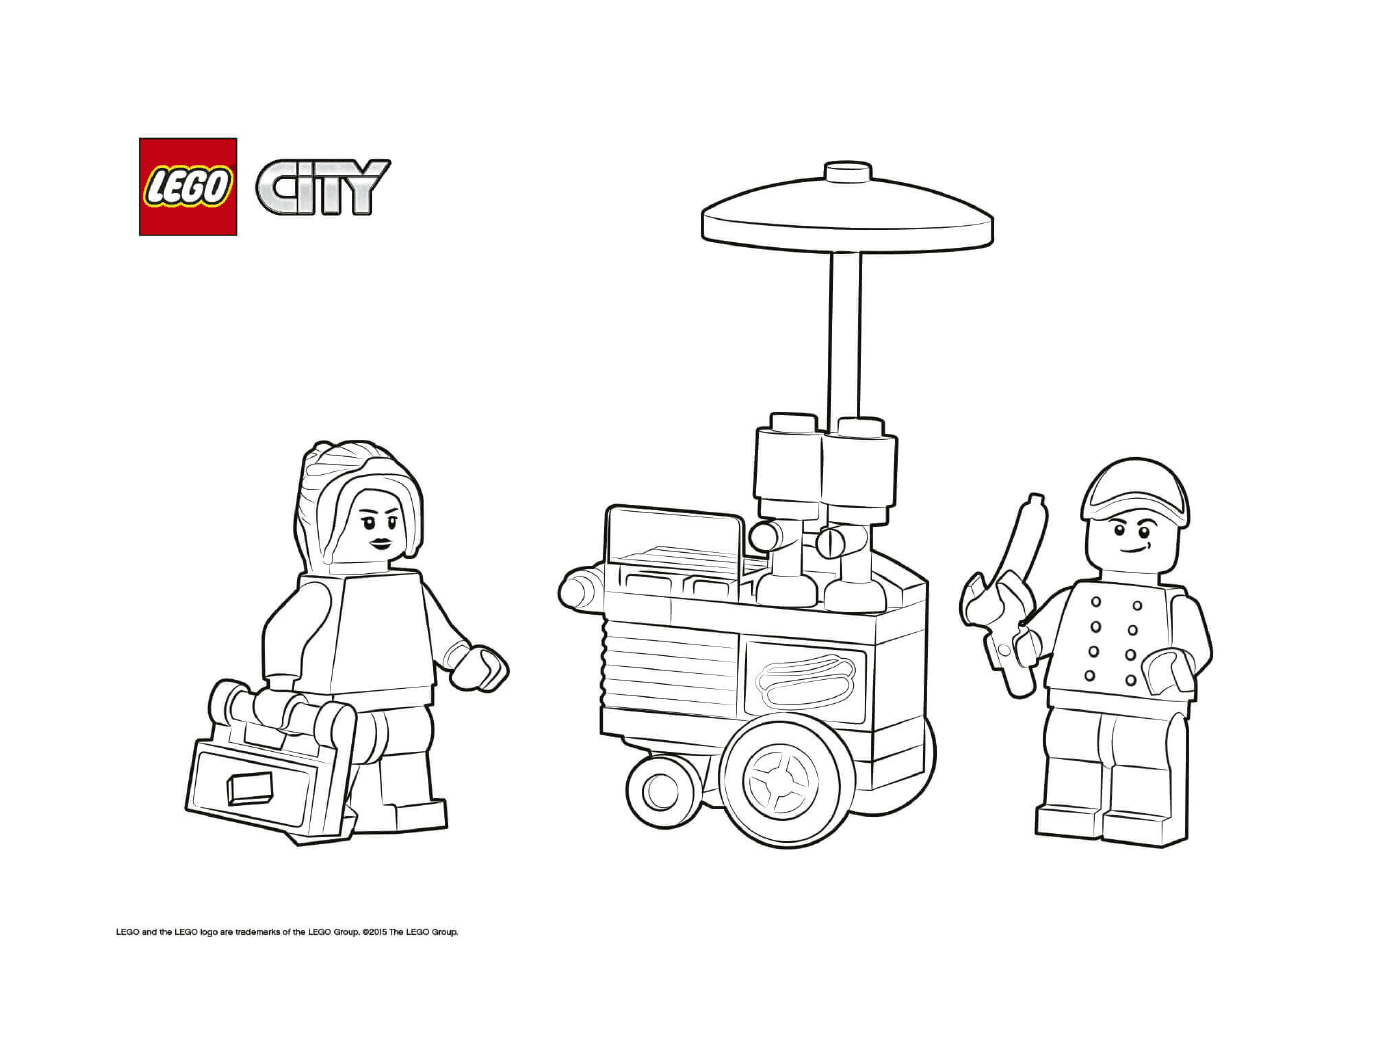  लेगो सिटी चौकusa. kgm 